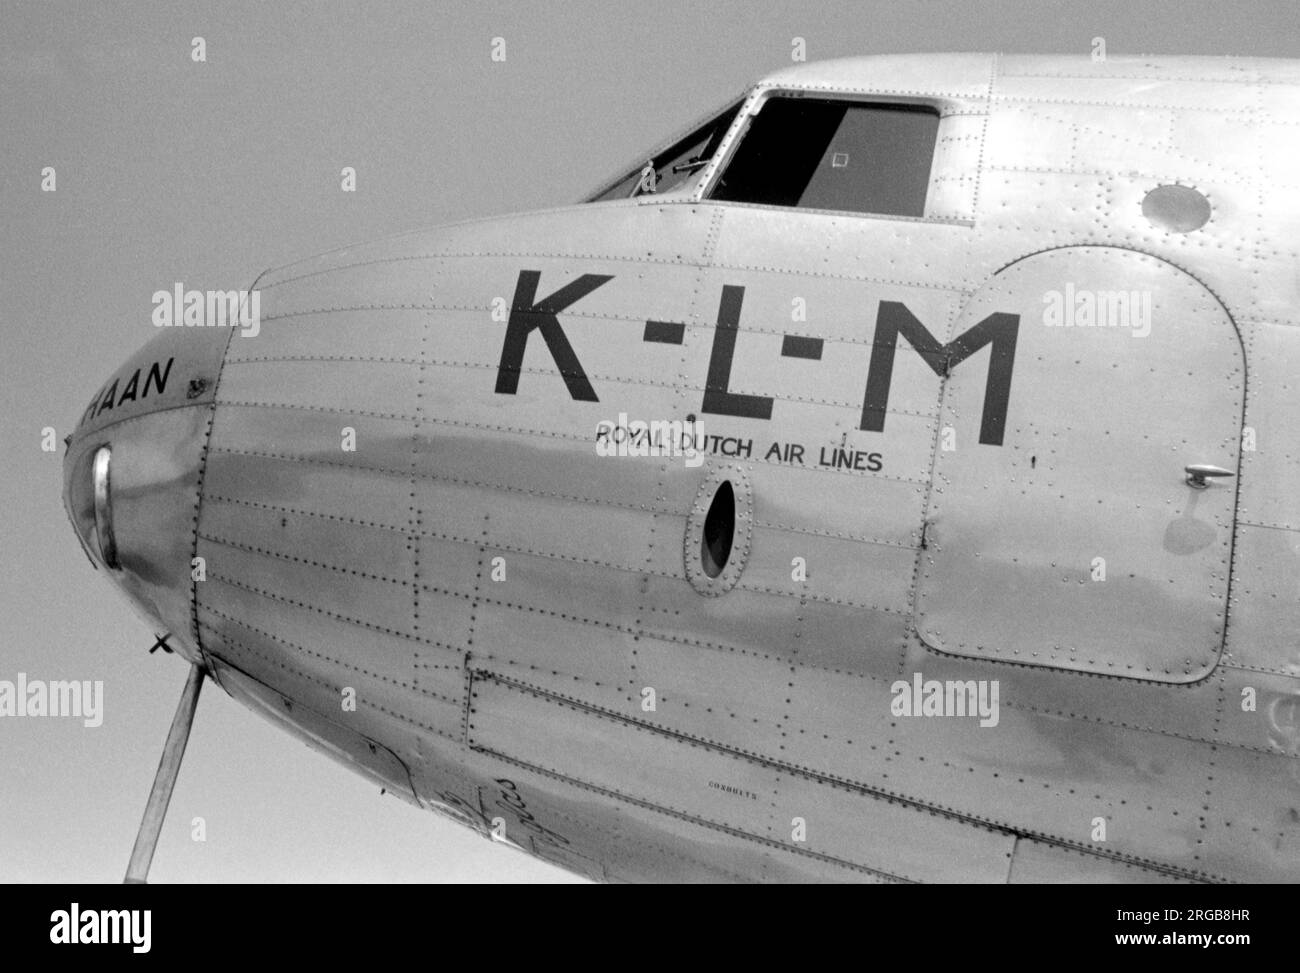 Douglas DC-2-115E pH-AKH 'Haan' (msn 1354,14), de KLM (Koninklijke Luchtvaart Maatschappij N.V. - Royal Aviation Company, Inc.) à l'aéroport de Croydon. Une étude du nez. Banque D'Images